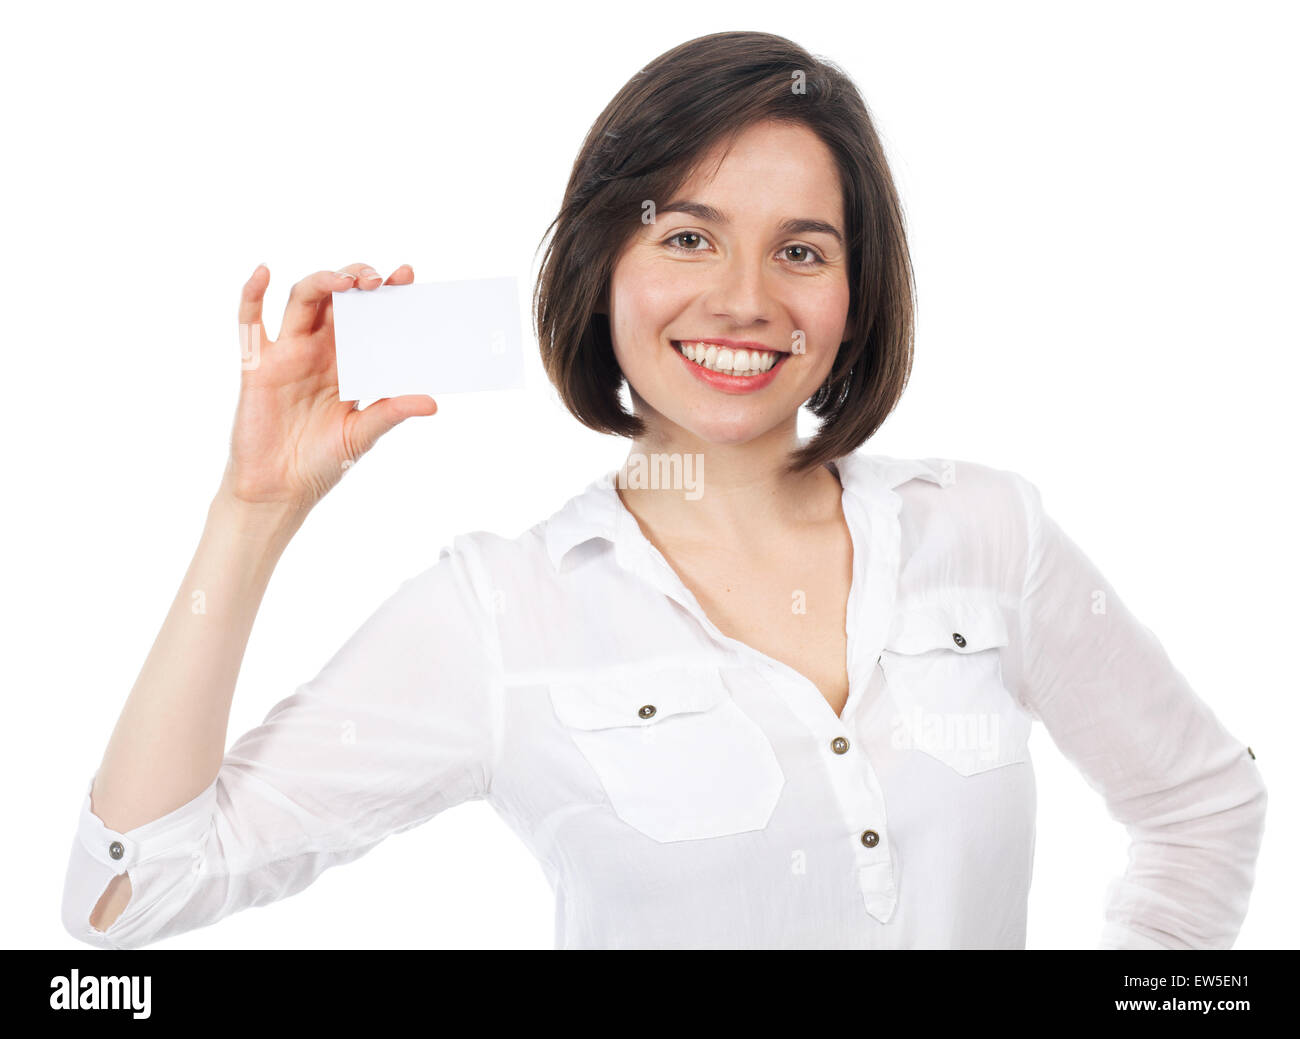 Piuttosto giovani brunette presentando un fustellato business card, isolato su bianco Foto Stock